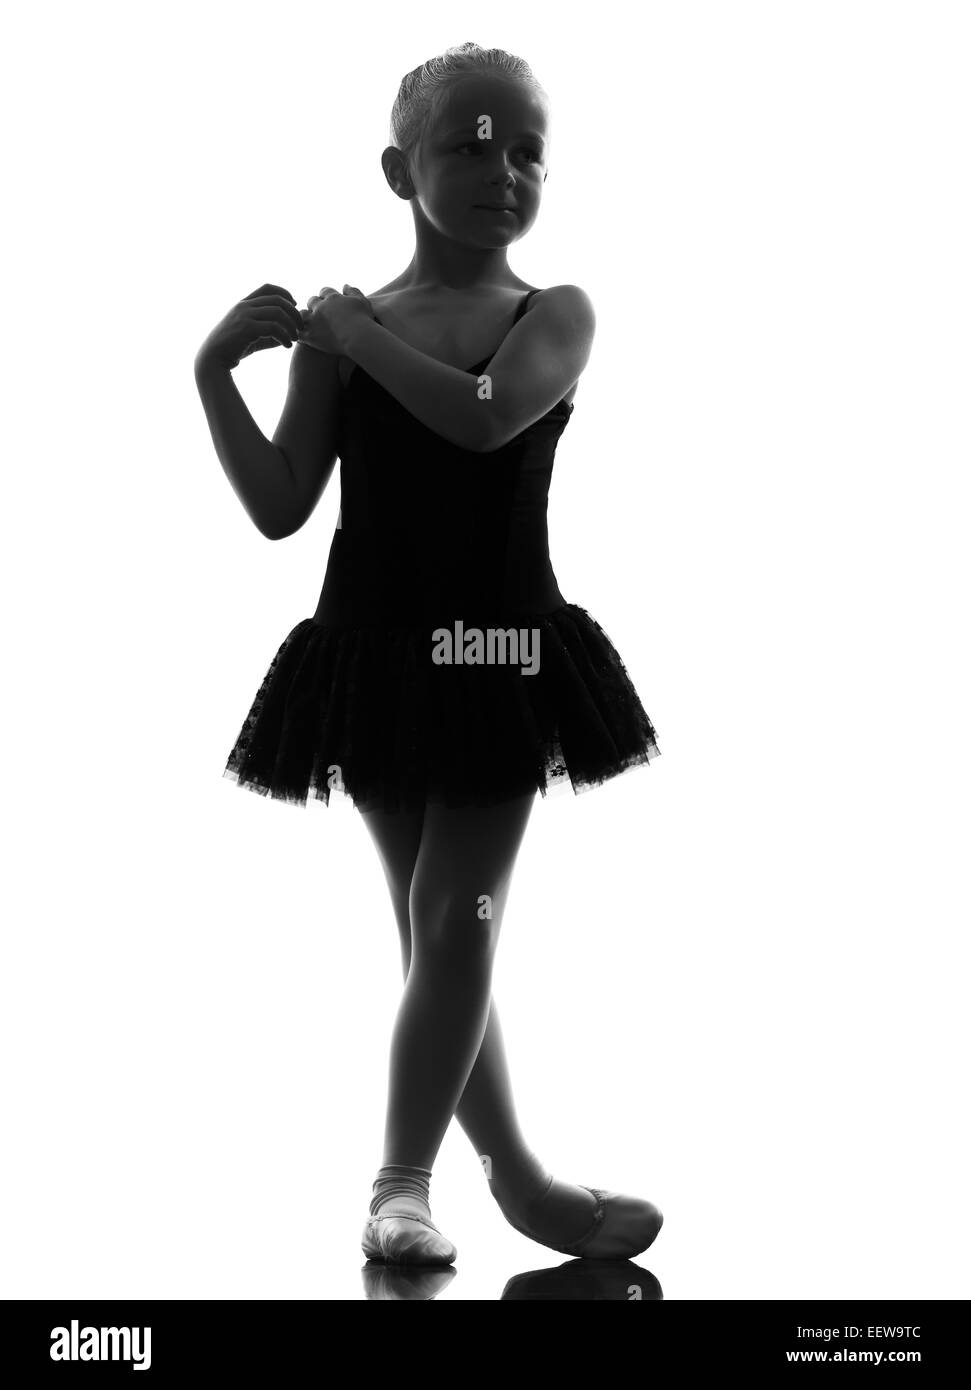 one little girl ballerina ballet dancer dancing in silhouette on white background Stock Photo